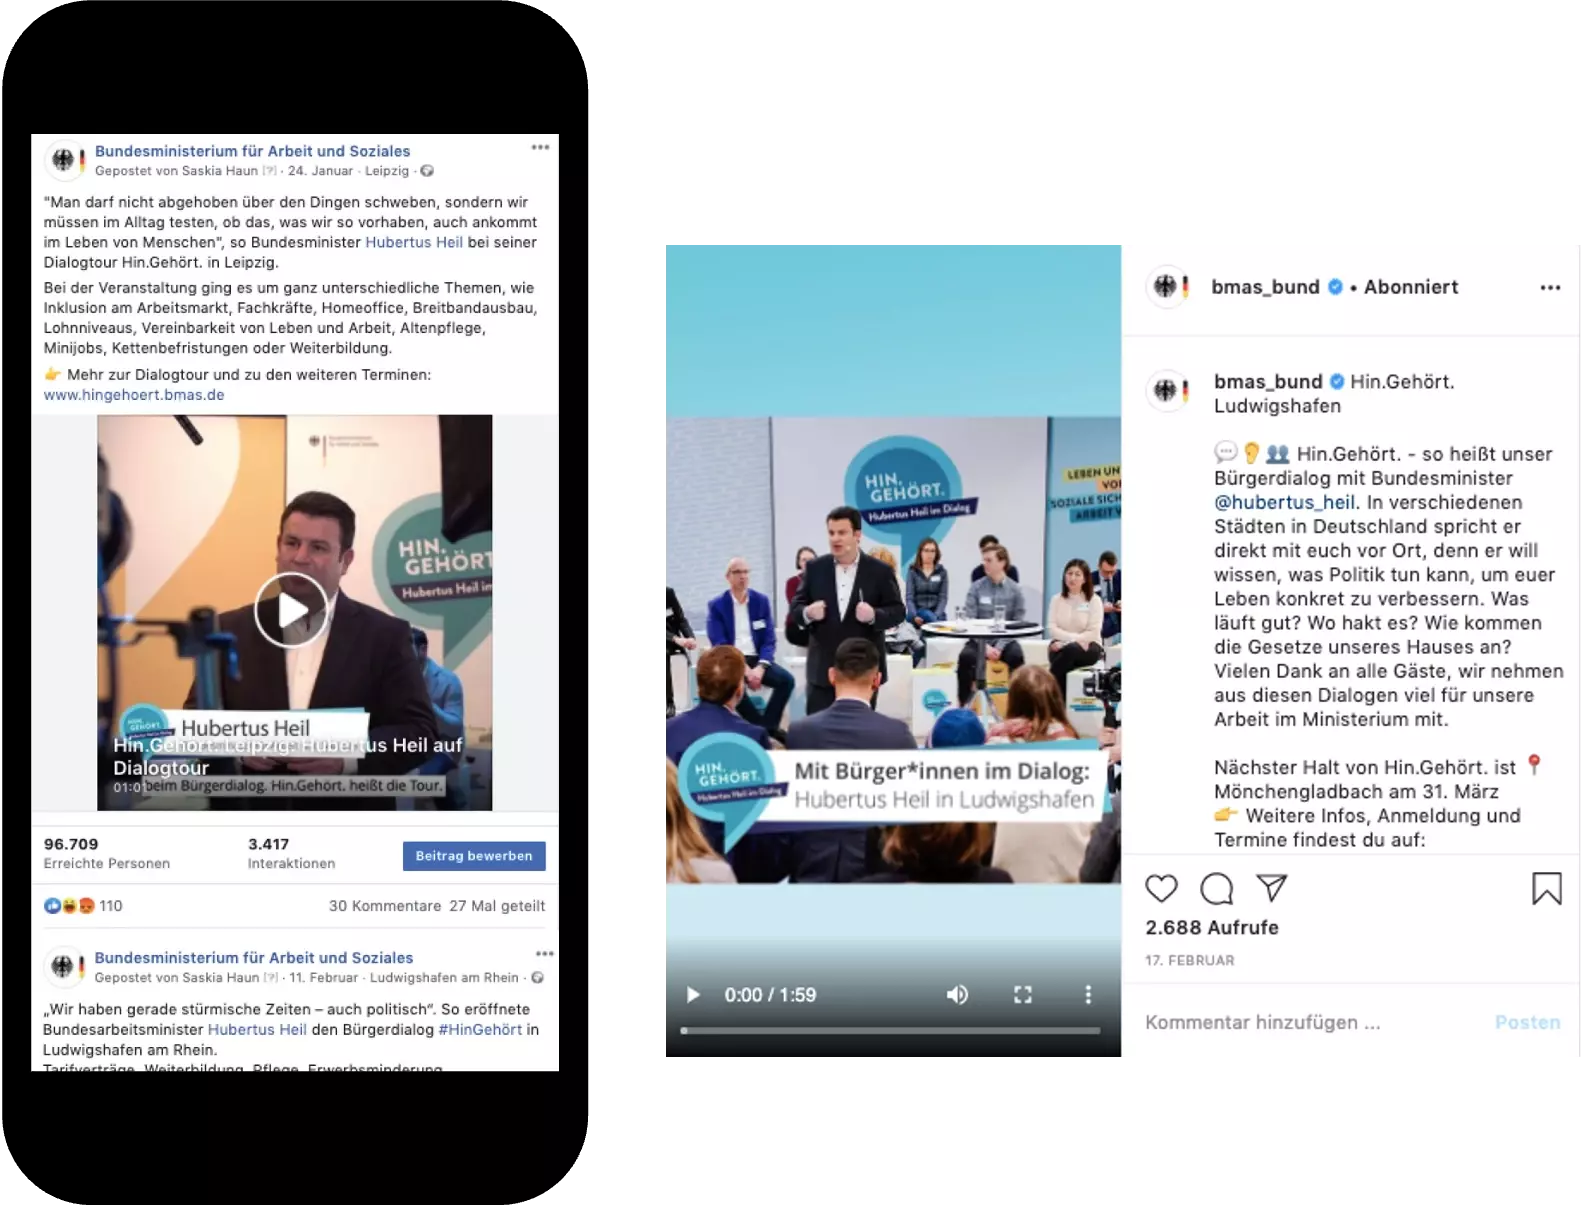 Eine Collage verschiedener Post in den Sozialen Medien, begleitend zur Veranstaltung.